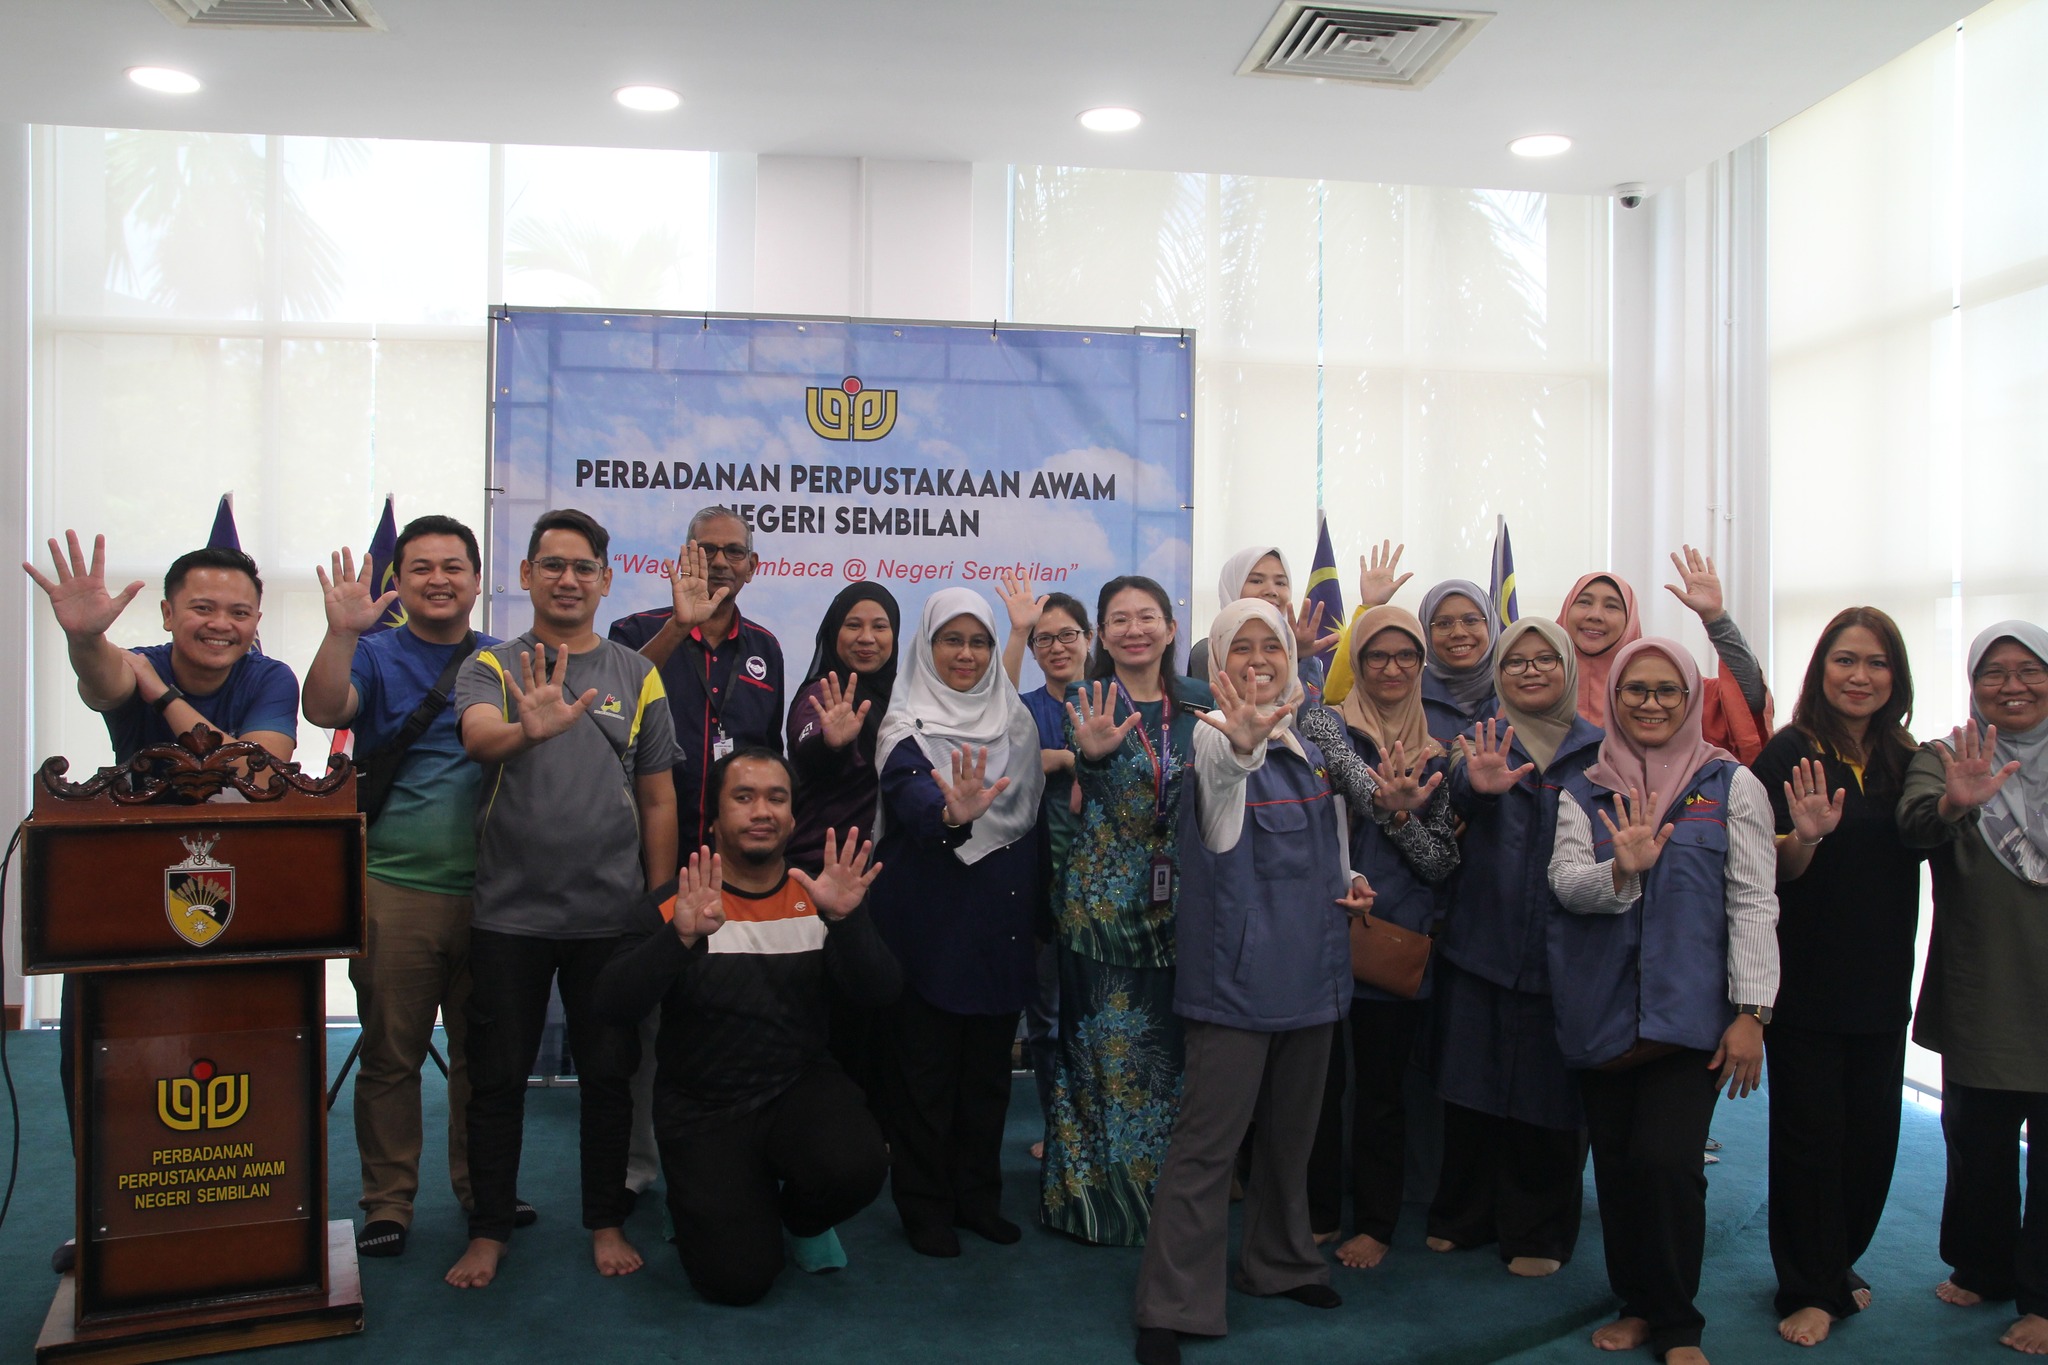 MALAYSIAN SIGN LANGUAGE CAMP